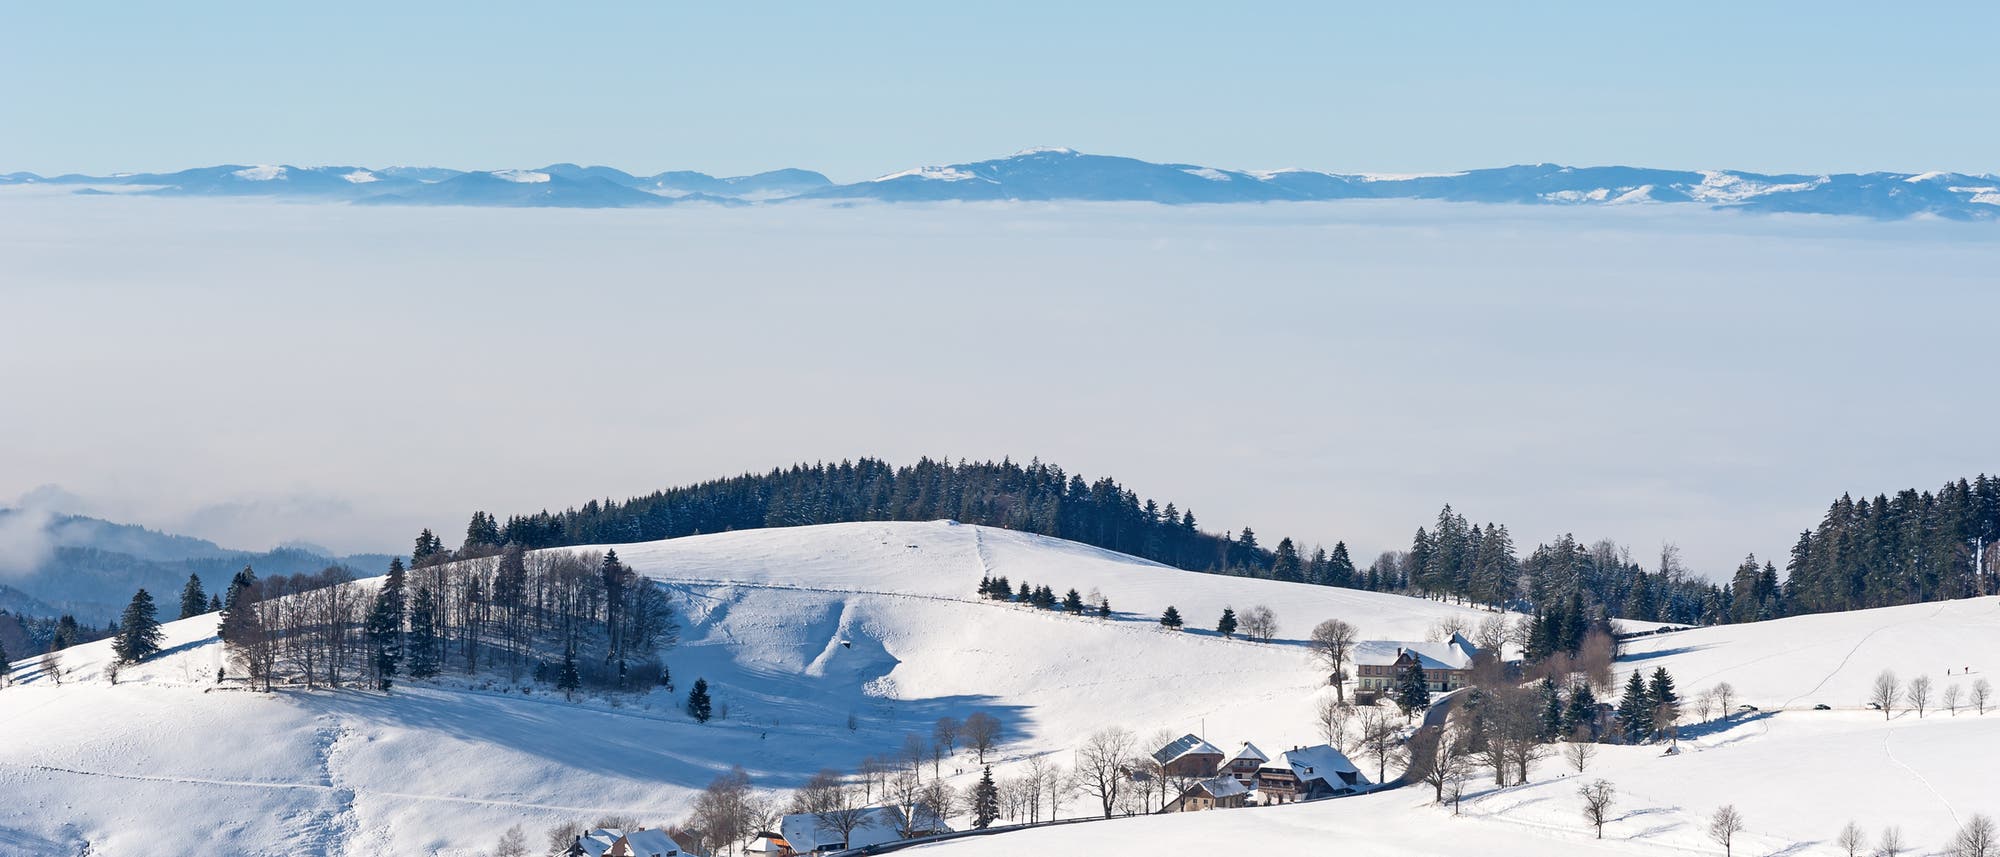 Inversionswetterlage im Schwarzwald: Während die Gipfel im Sonnenschein baden, hängt im Tal der Nebel